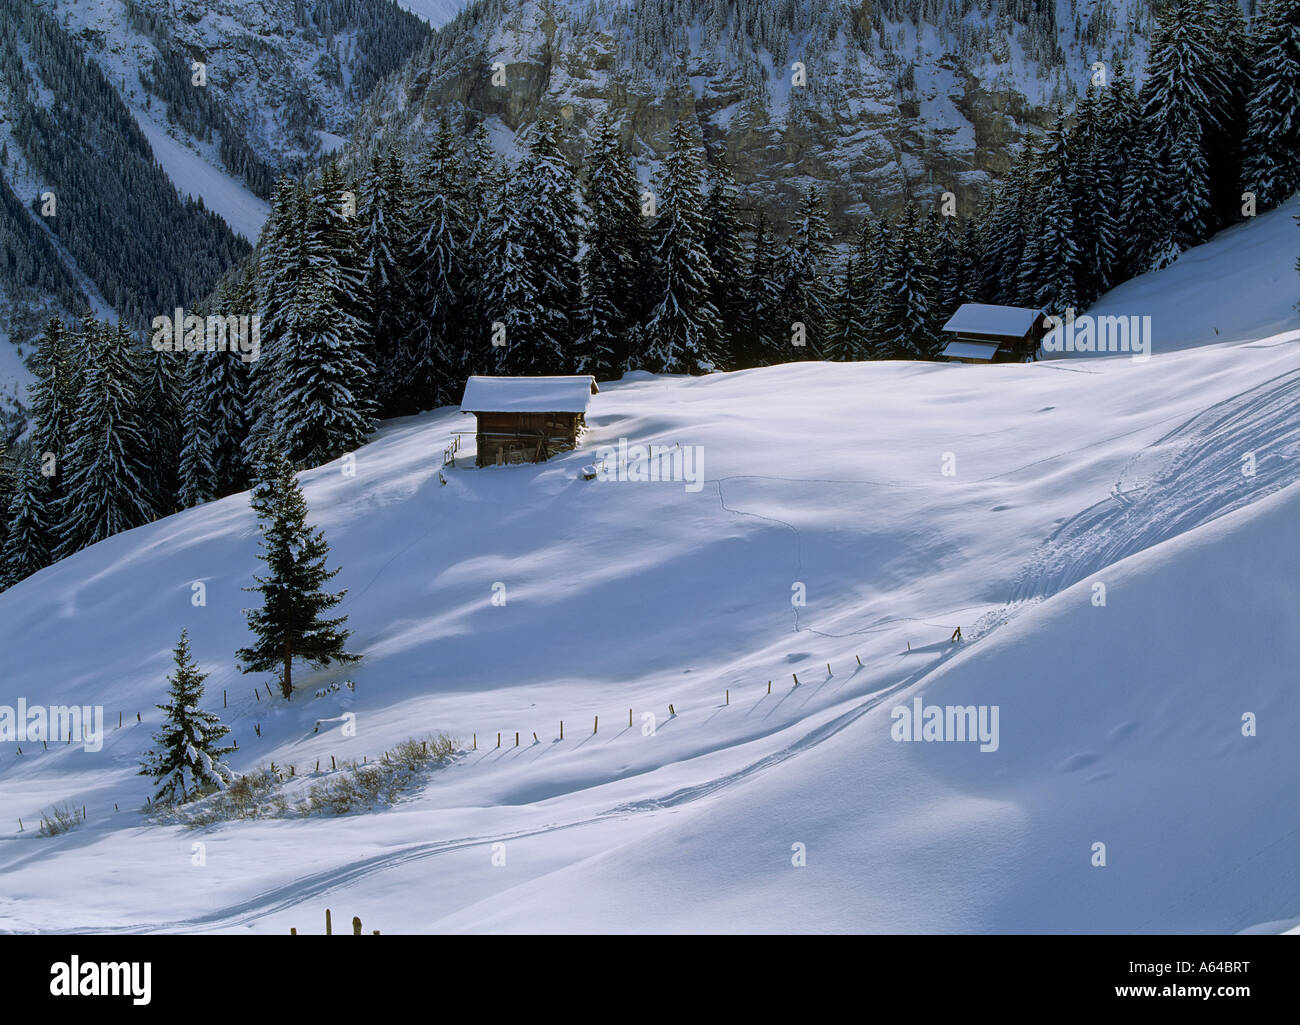 Les voies de skieurs dans powdersnow près du village de murren région de Highland bernoises alpes Suisse canton de Berne Suisse Banque D'Images